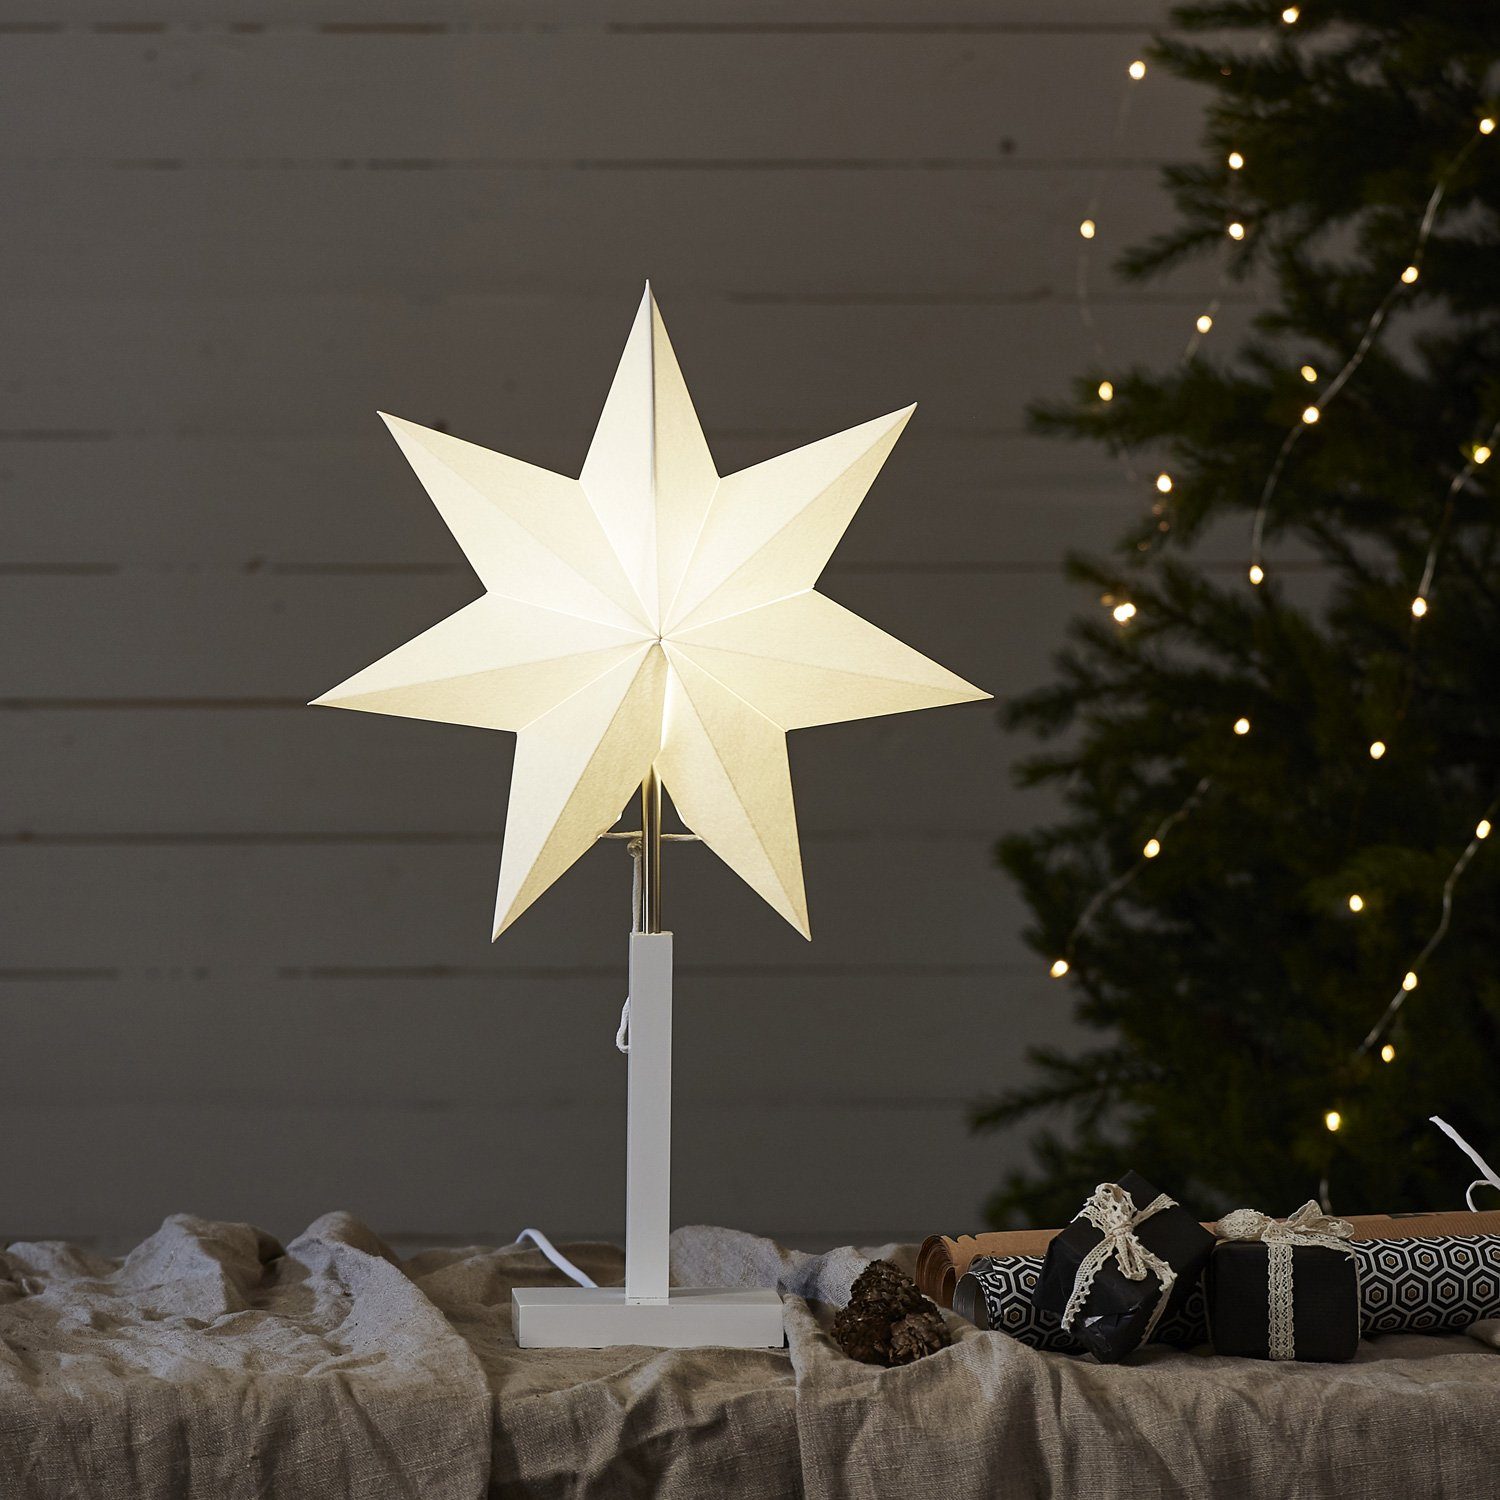 Stern 7-zackig 34cm STAR Papierstern weiß LED inkl. Kabel stehend TRADING Weihnachtsstern E14